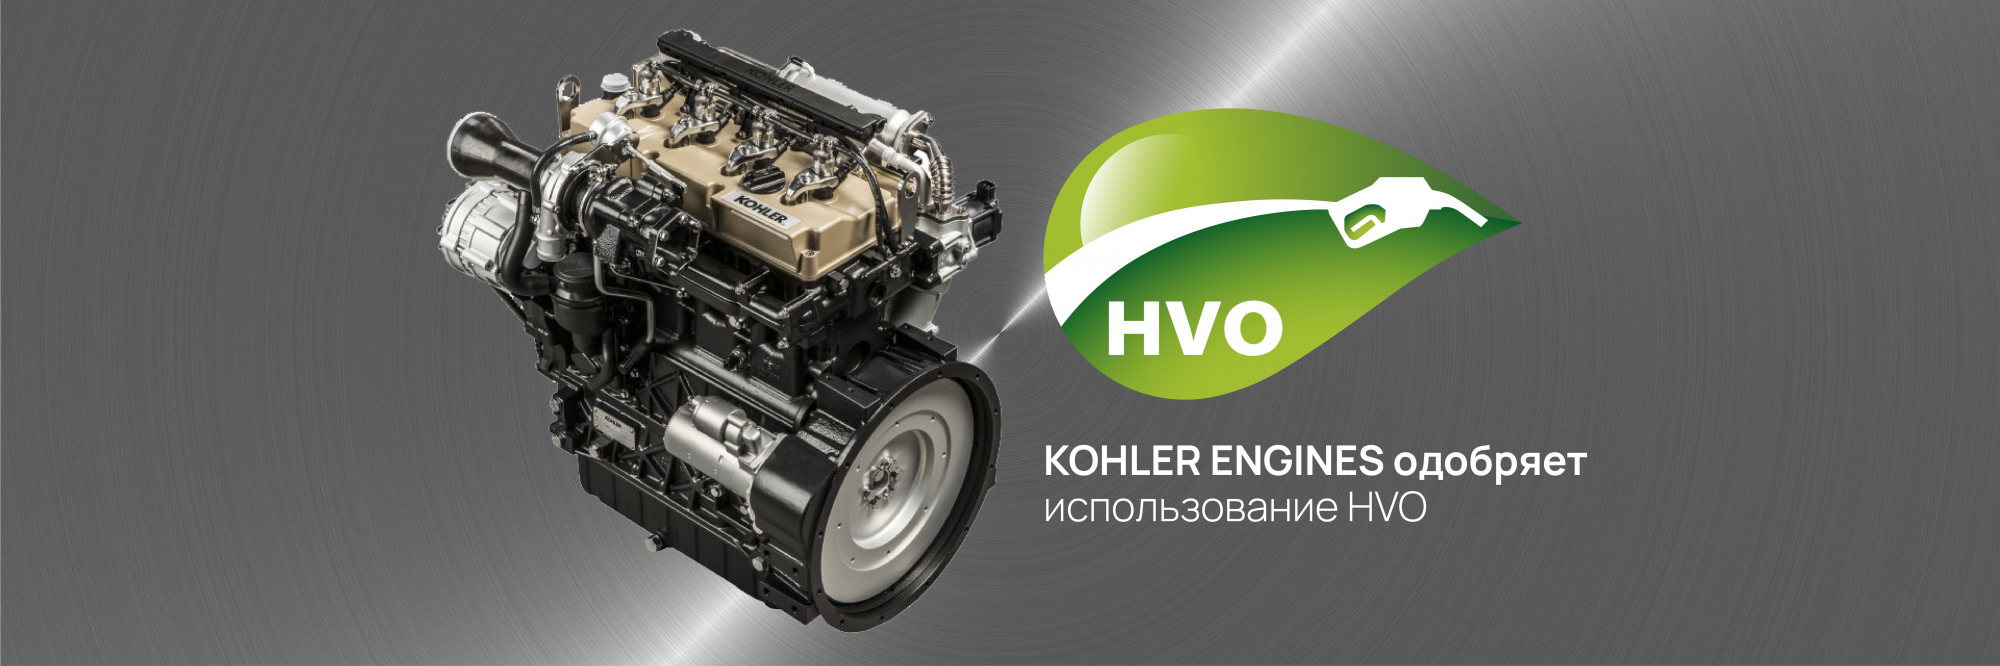 KOHLER ENGINES одобряет использование HVO для всех своих дизельных двигателей в Европе